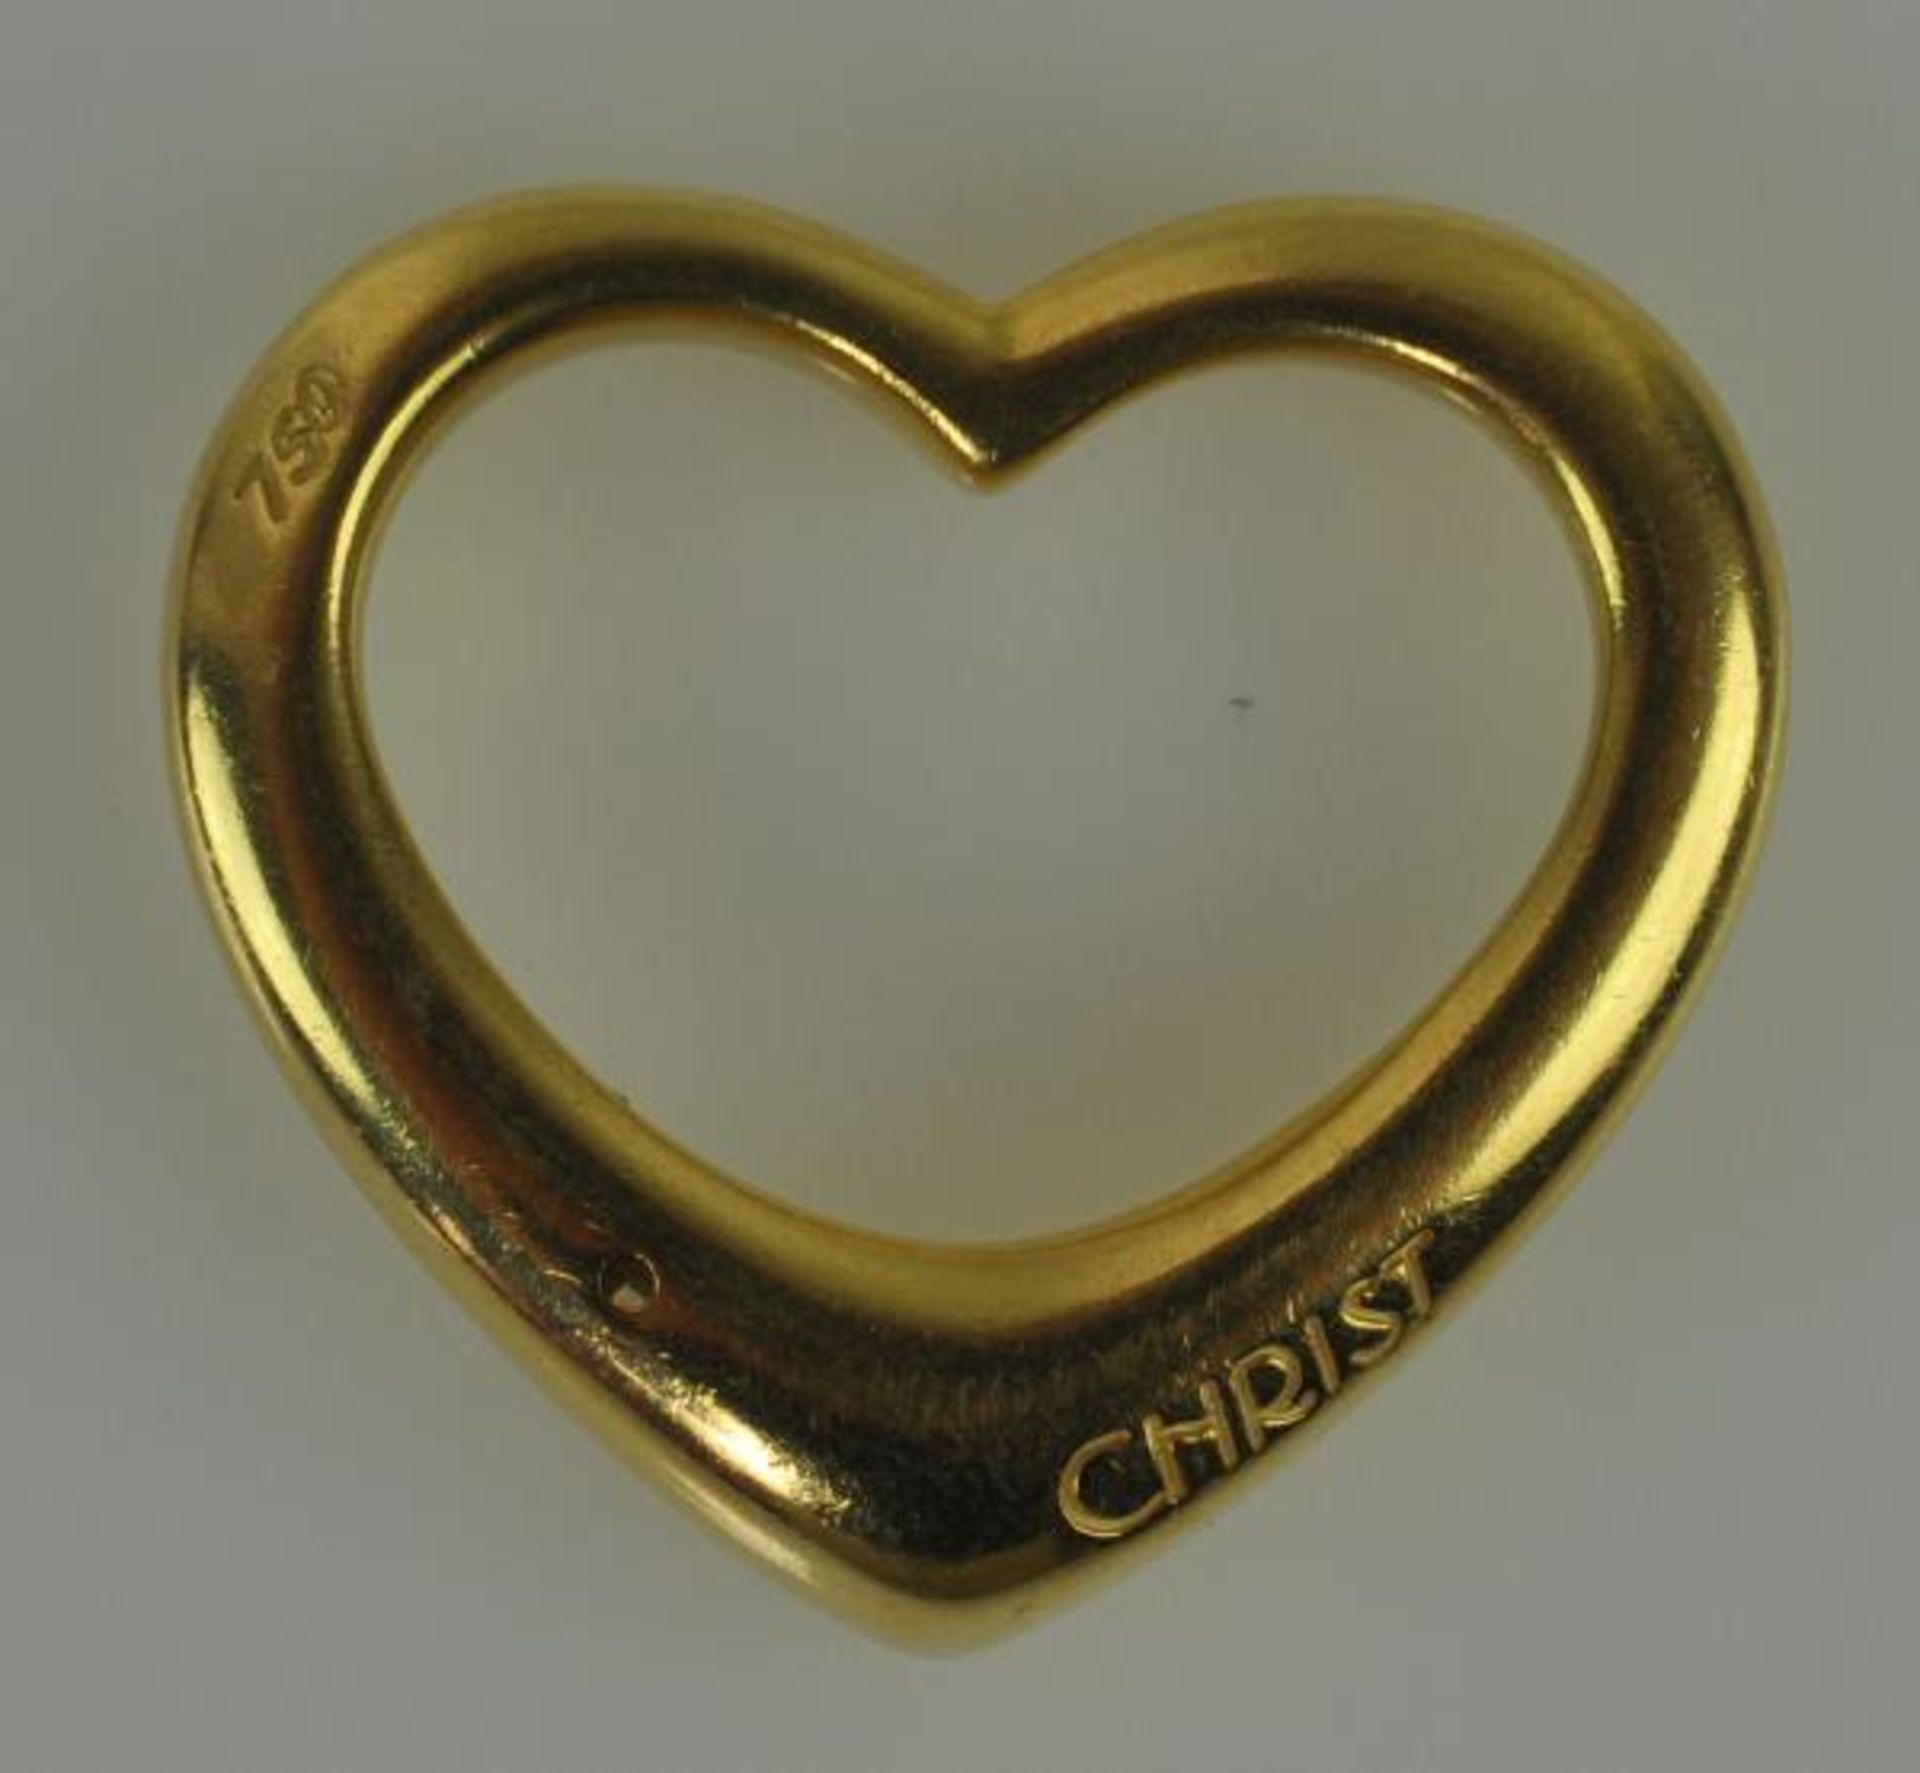 HERZANHÄNGER großes Herz, besetzt mit einem Brillant, Gelbgold 18ct, signiert "Christ", 7,8g, - Bild 2 aus 2